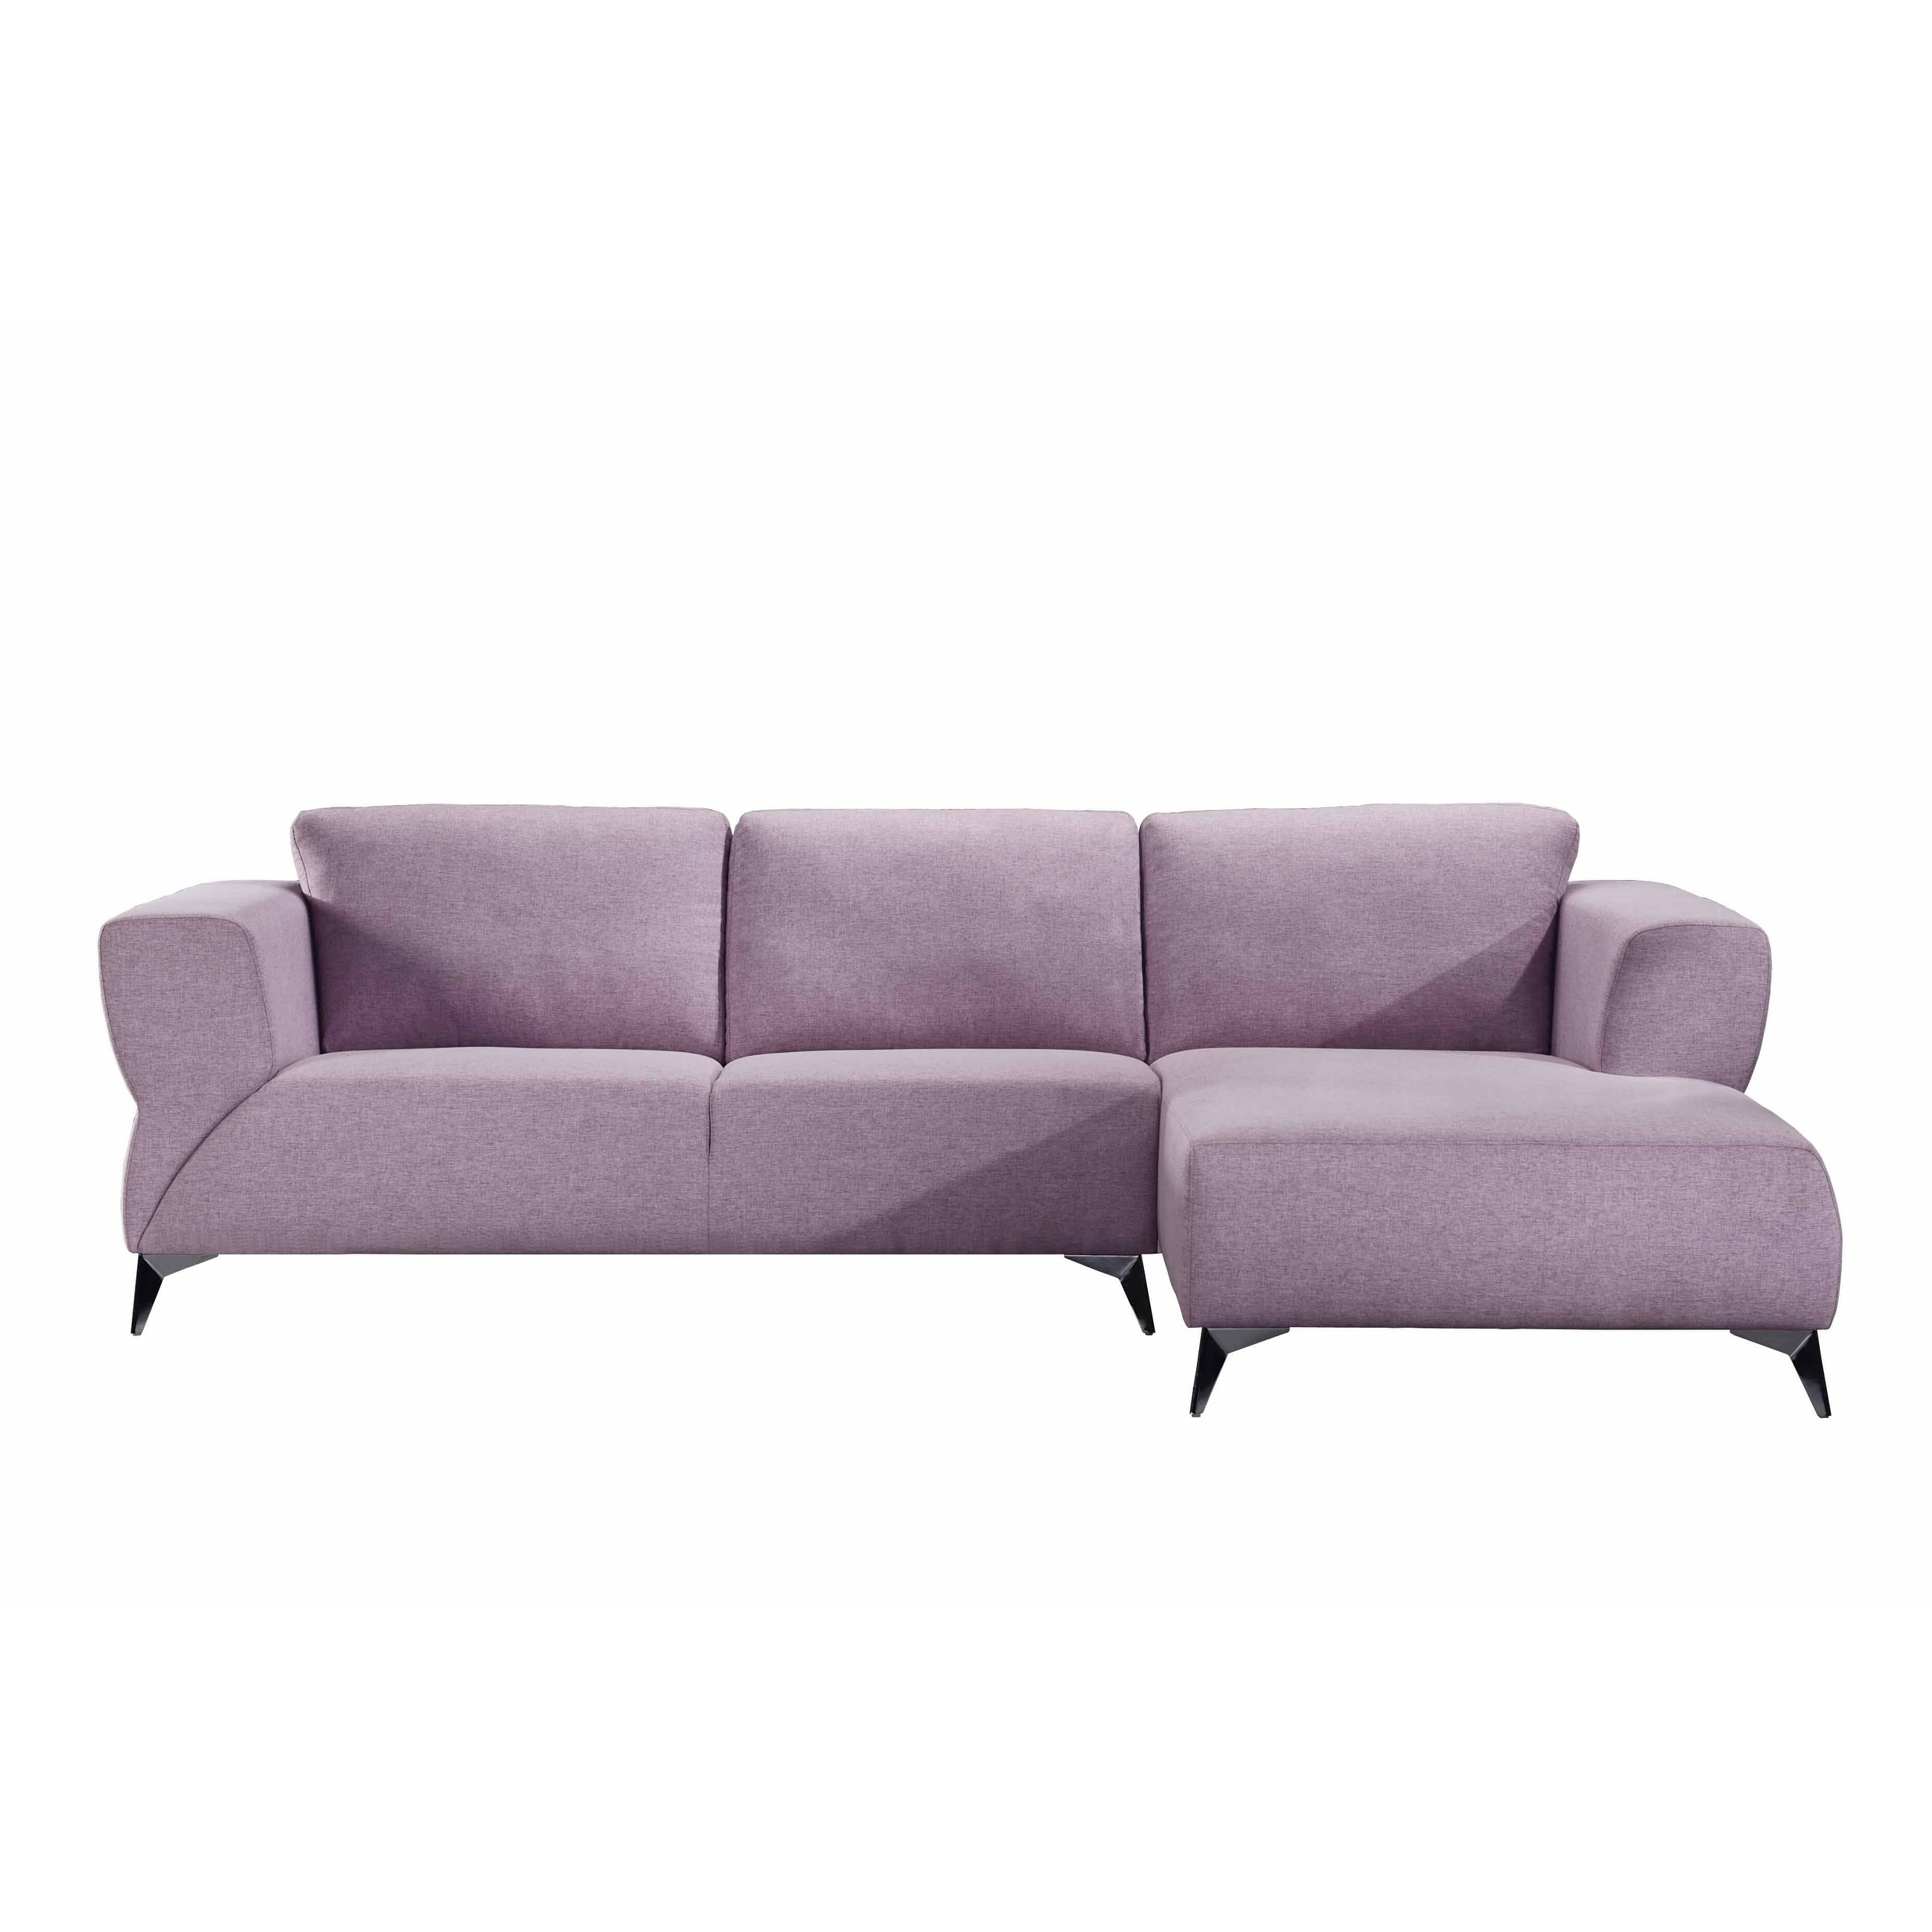 Acme Furniture Josiah Sectional Sofa in Pale Berries Fabric